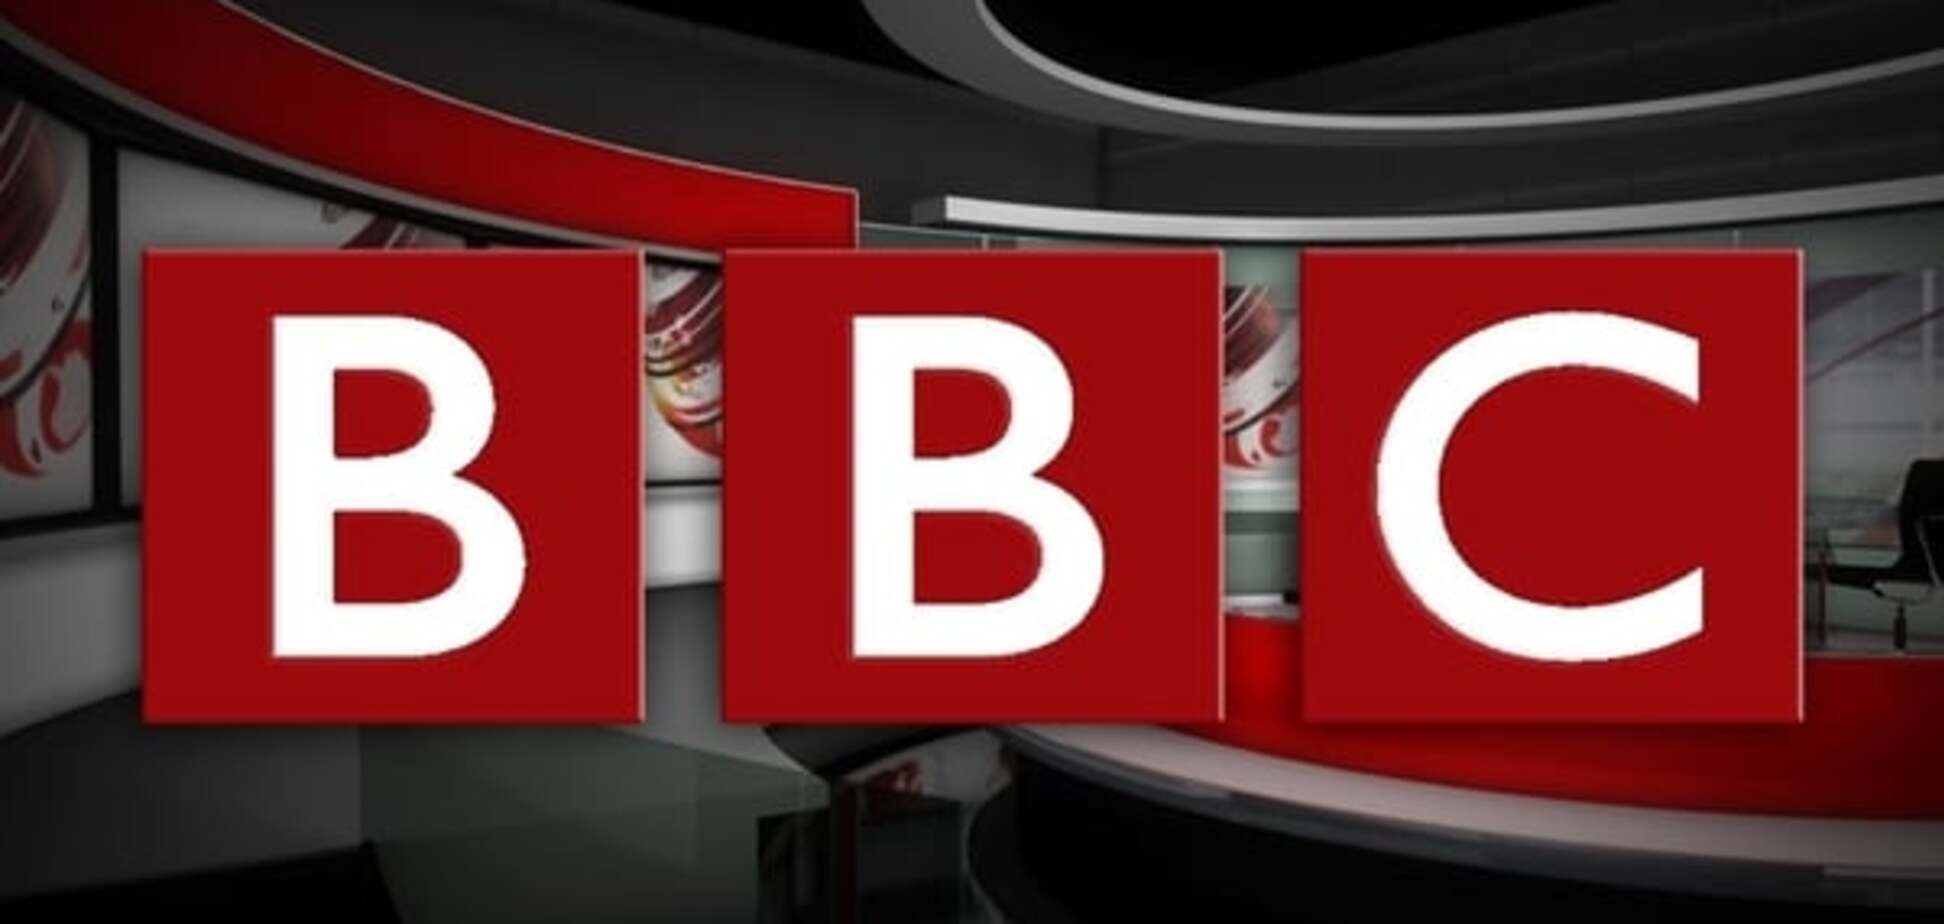 Руководство BBC возмутилось новыми украинскими санкциями